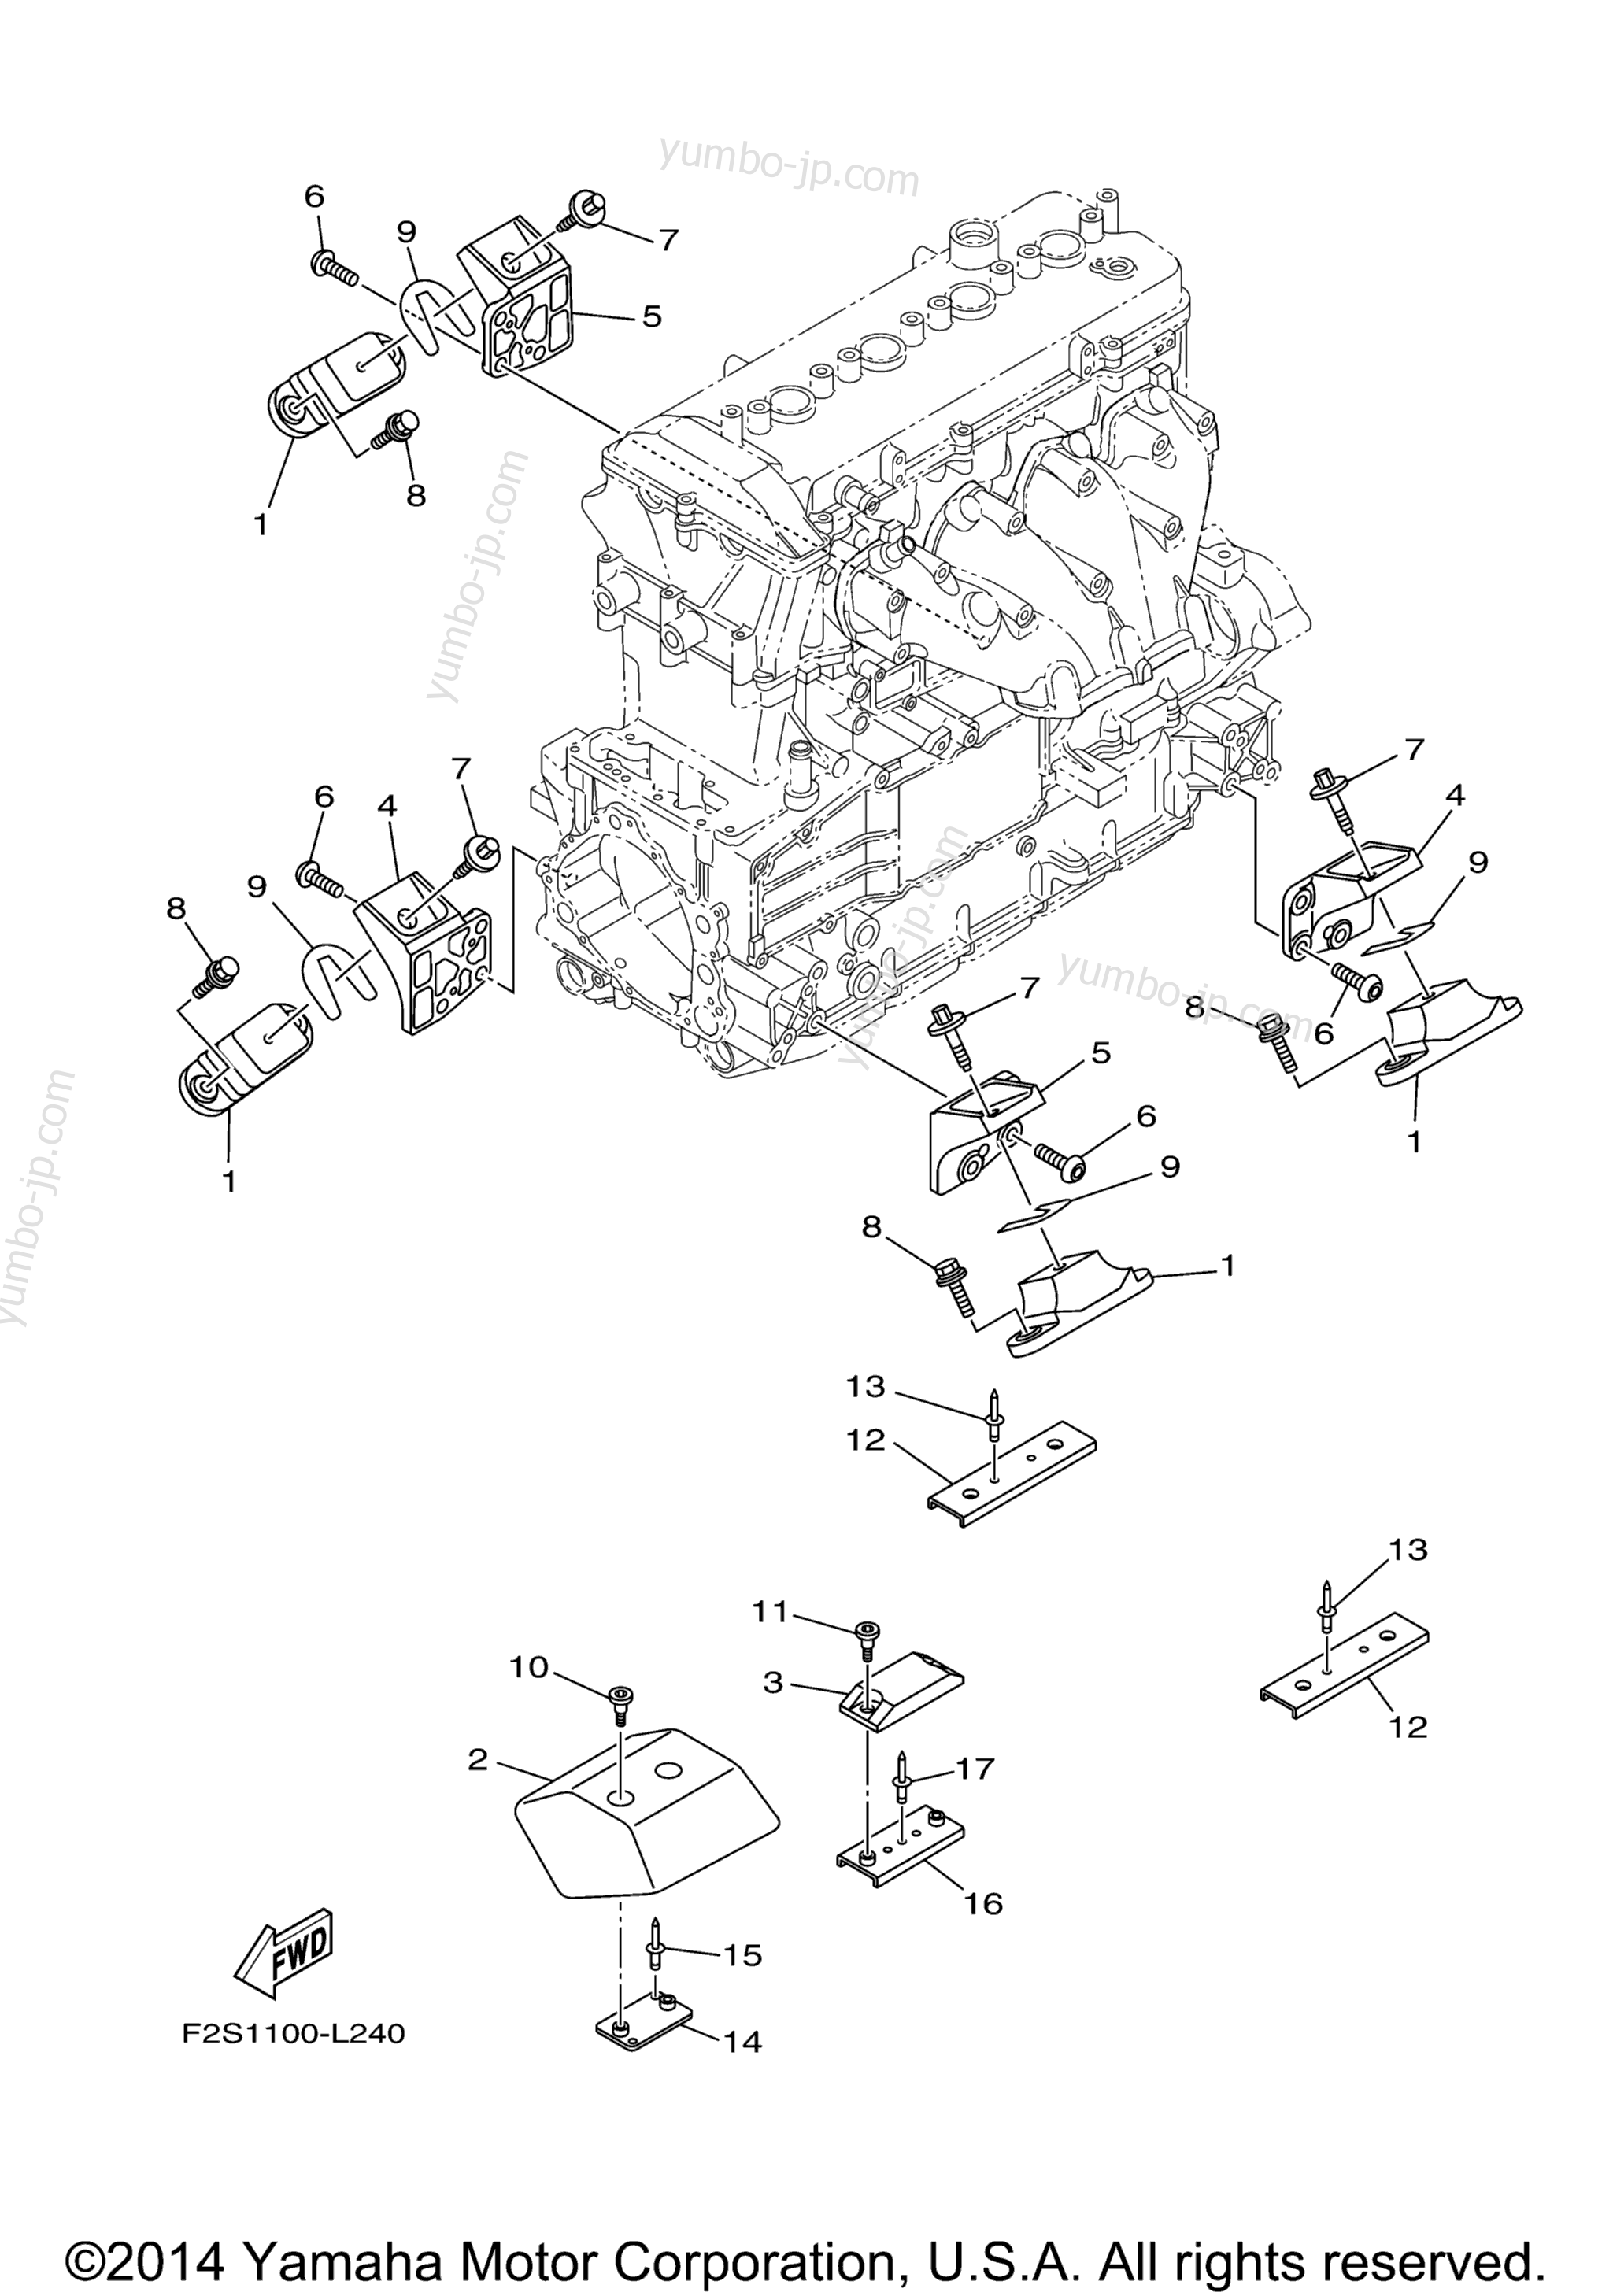 ENGINE MOUNT для гидроциклов YAMAHA FX SVHO (FC1800P) 2015 г.